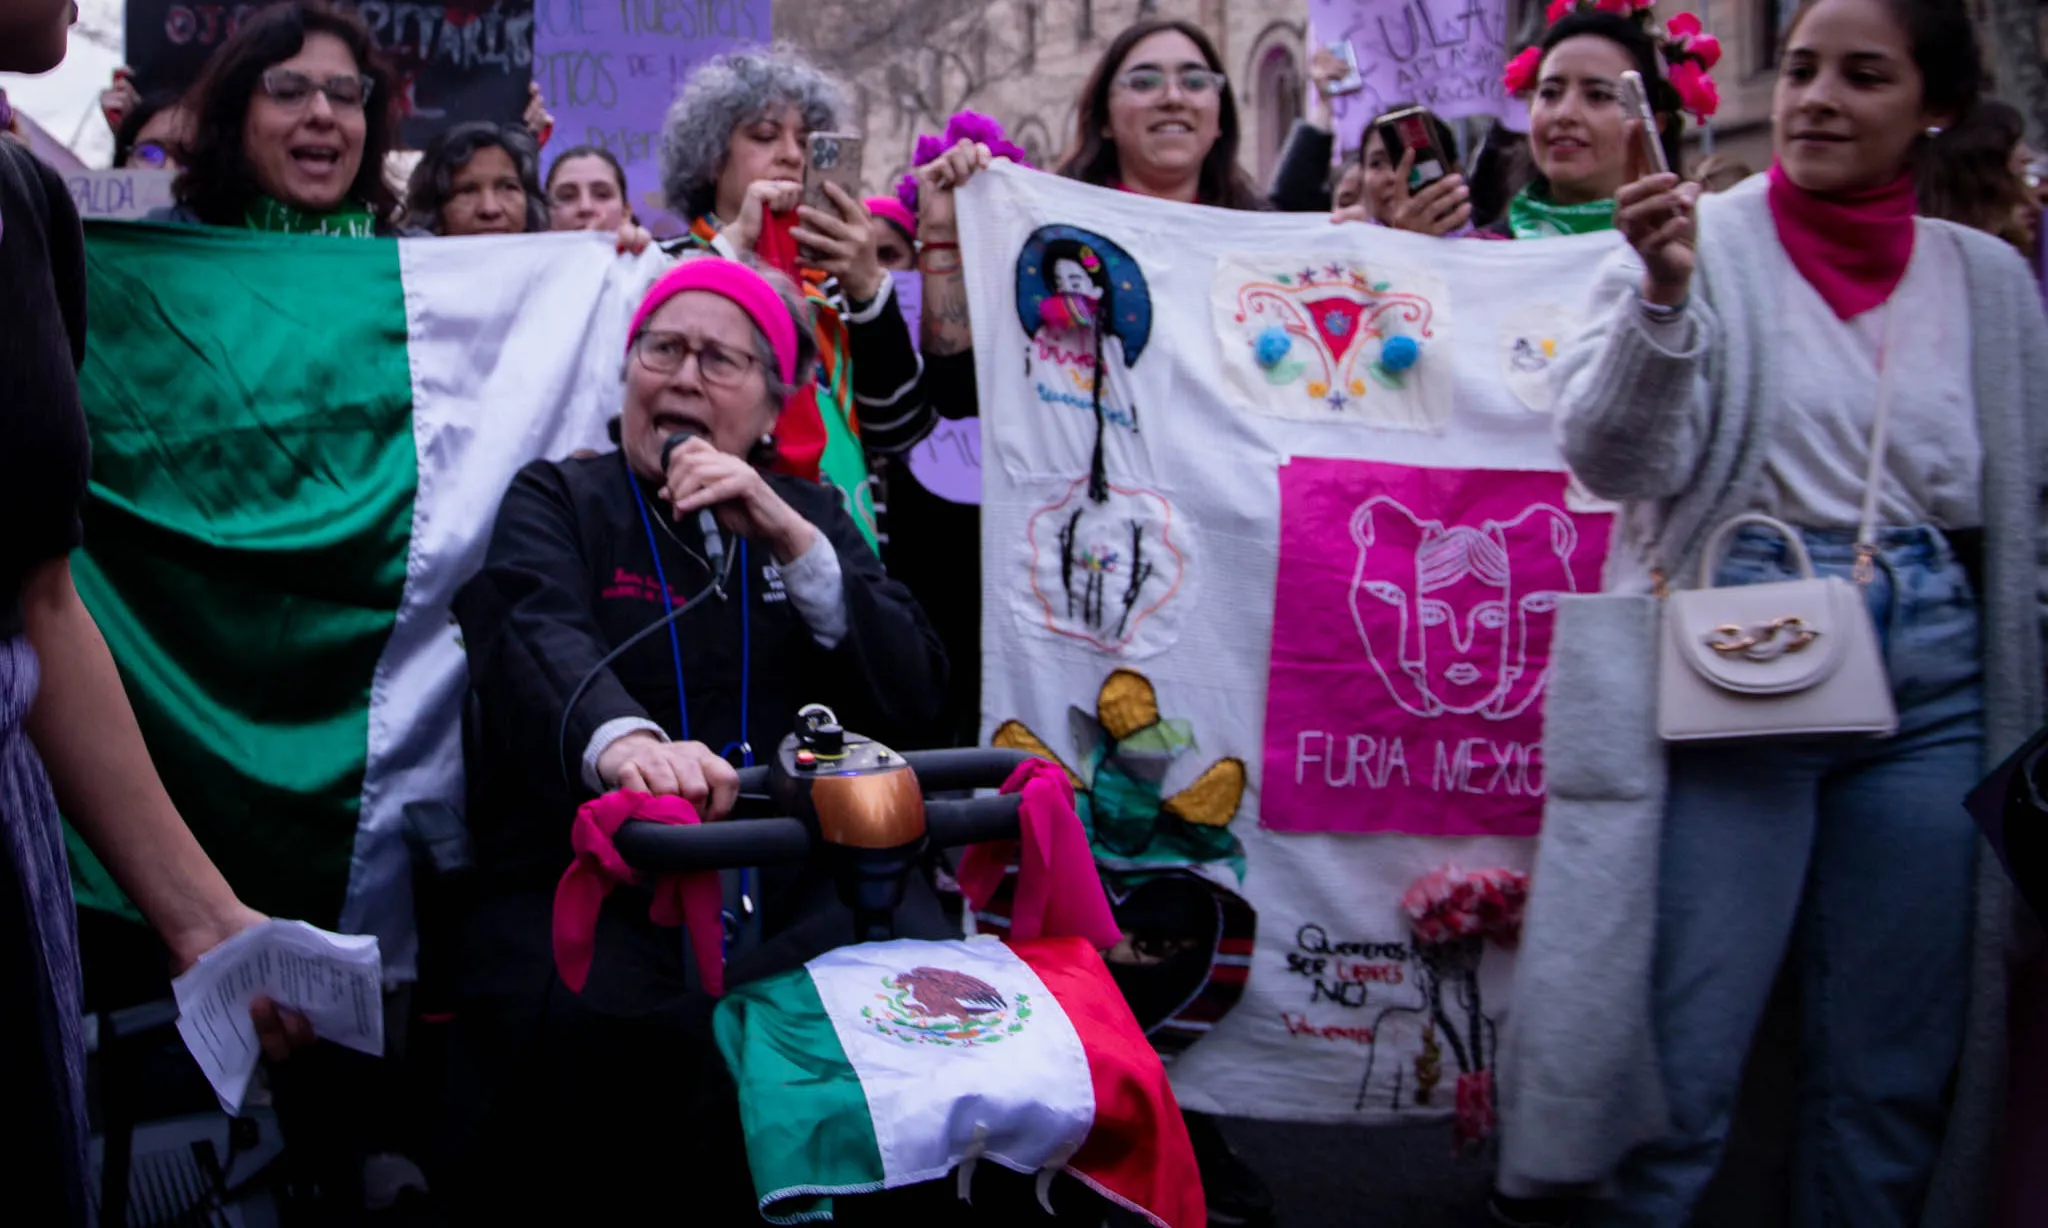 Algunes membres de Furia Mexicana durant la marxa del 8 de març a Barcelona.